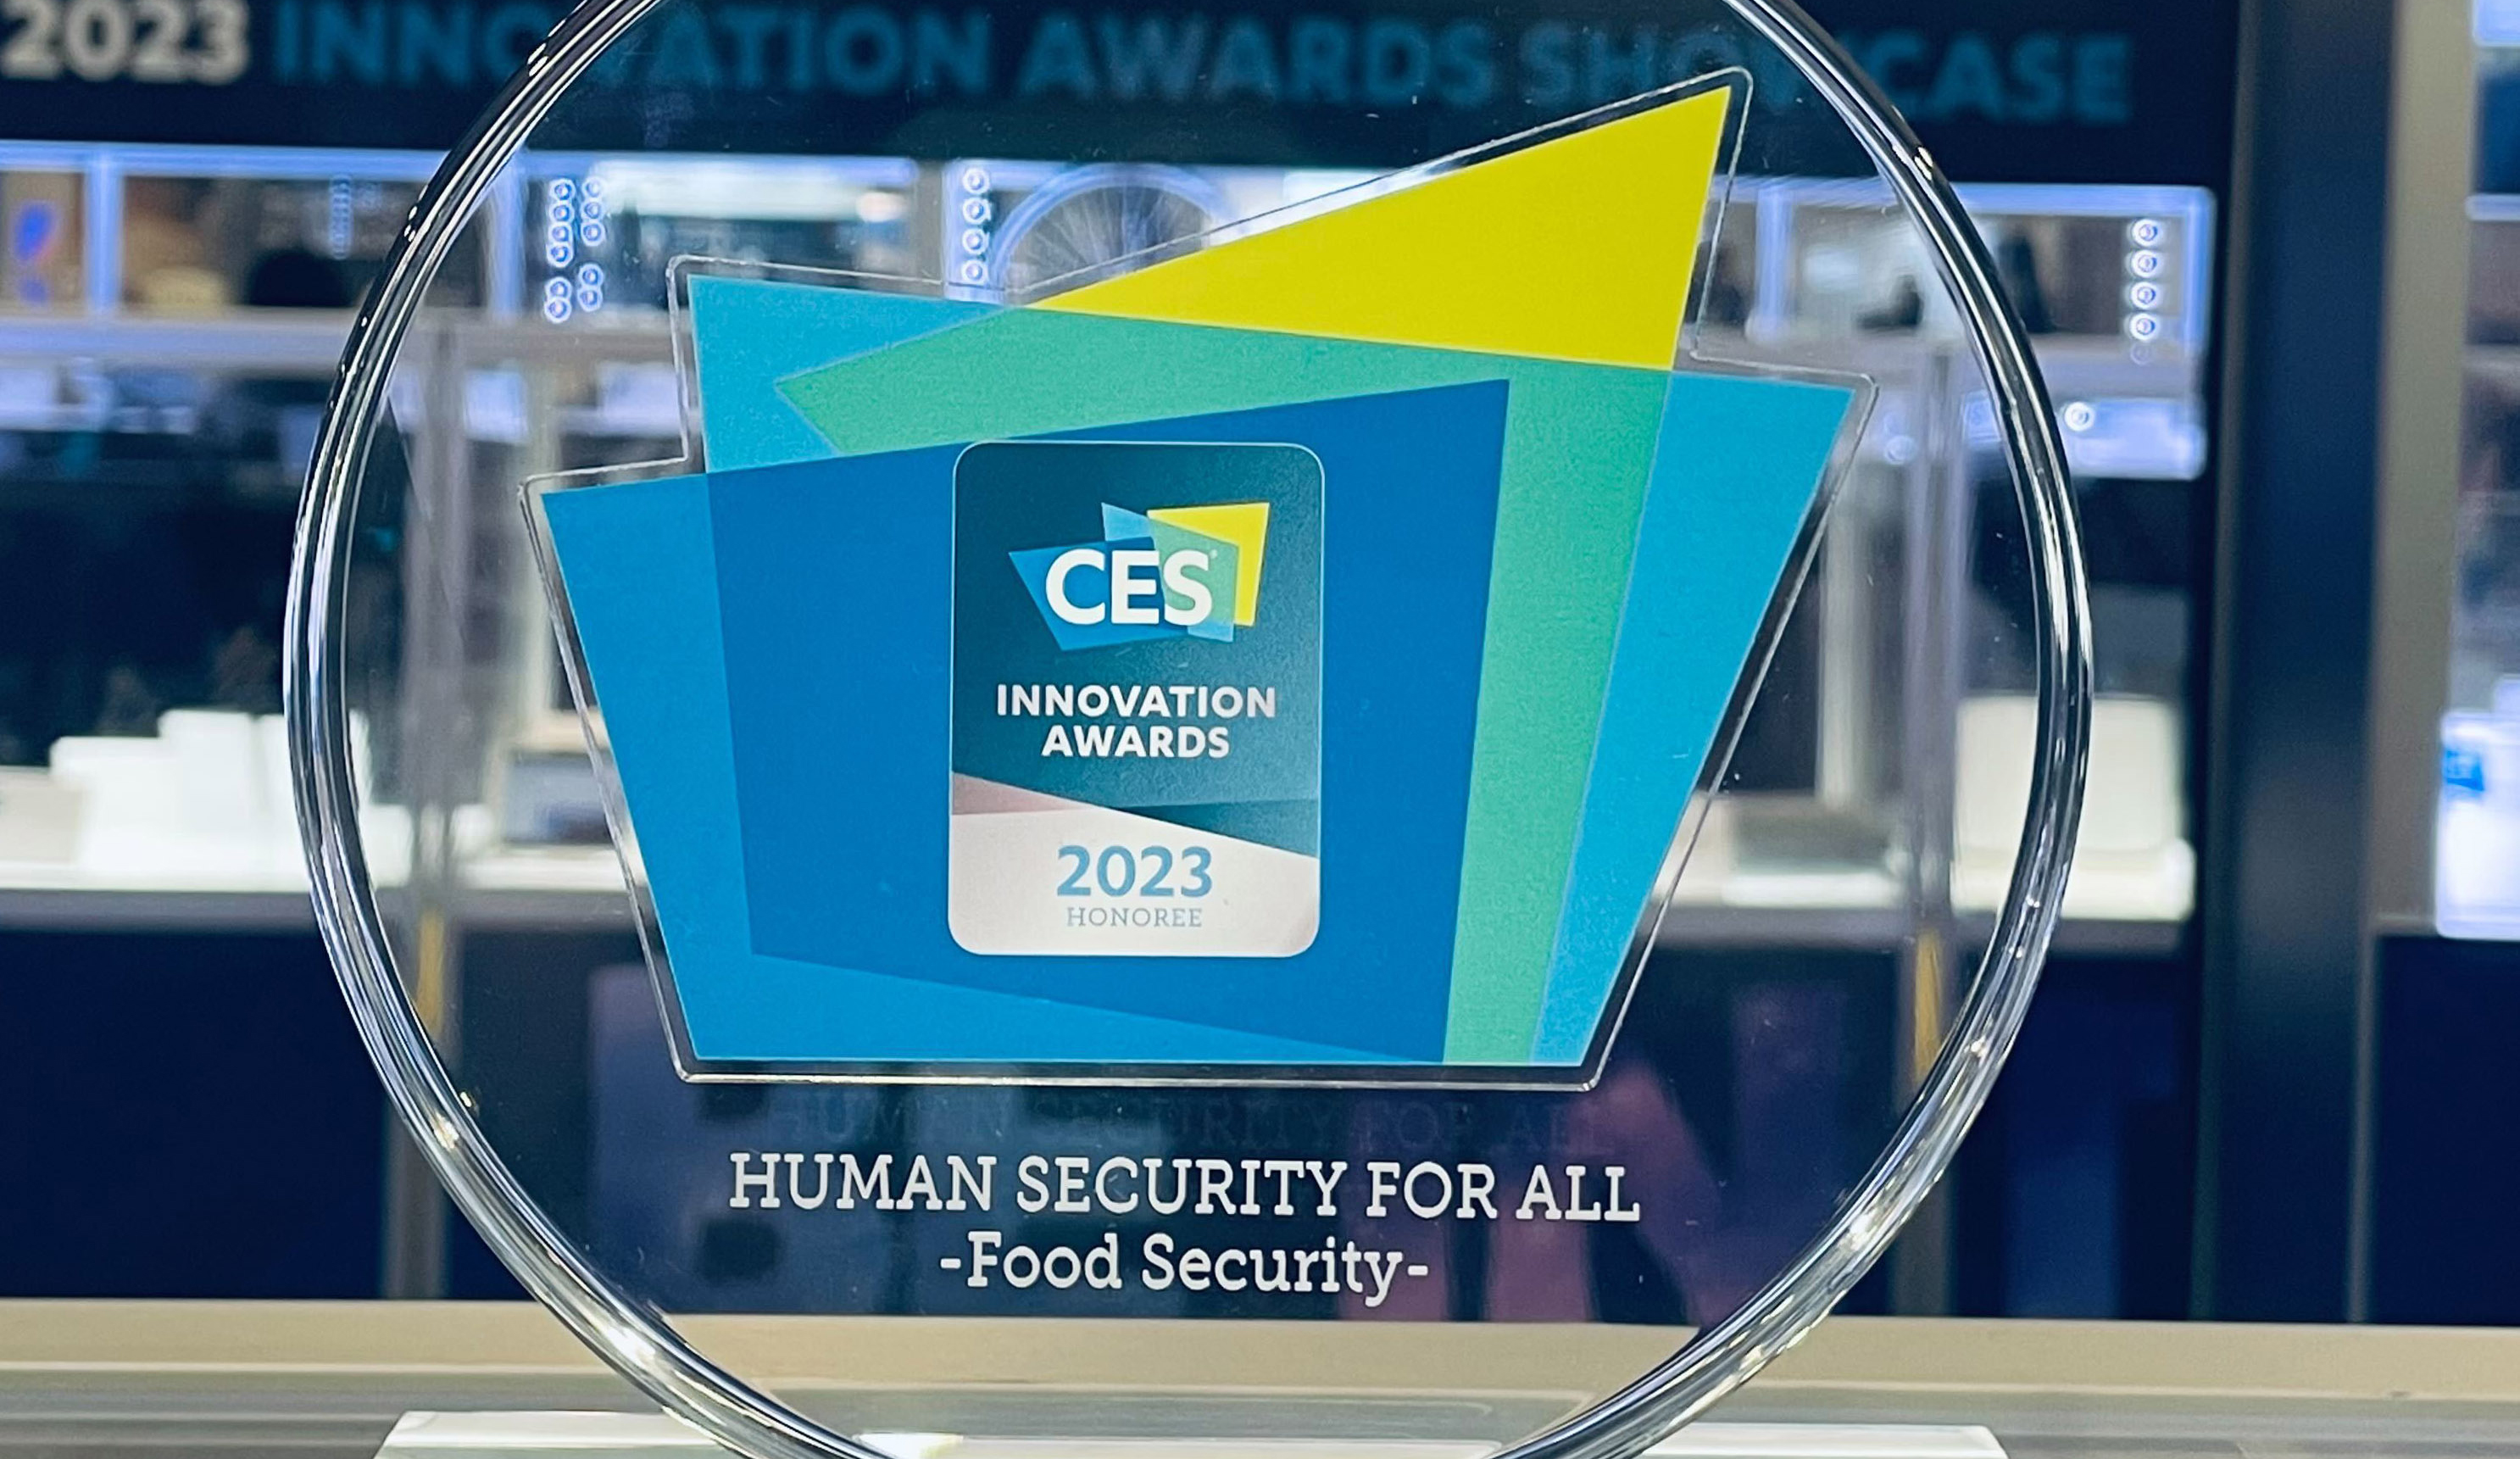 تكريم شركة يوفيرا الناشئة في كاوست بجائزة الابتكار في معرض الإلكترونيات الاستهلاكية CES 2023